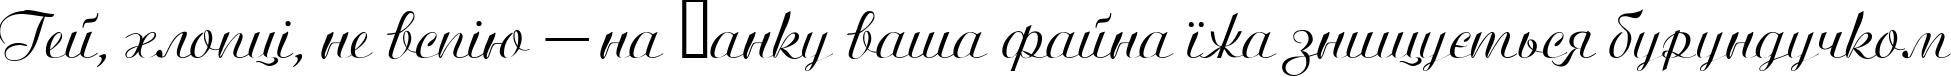 Пример написания шрифтом Ariston Normal текста на украинском